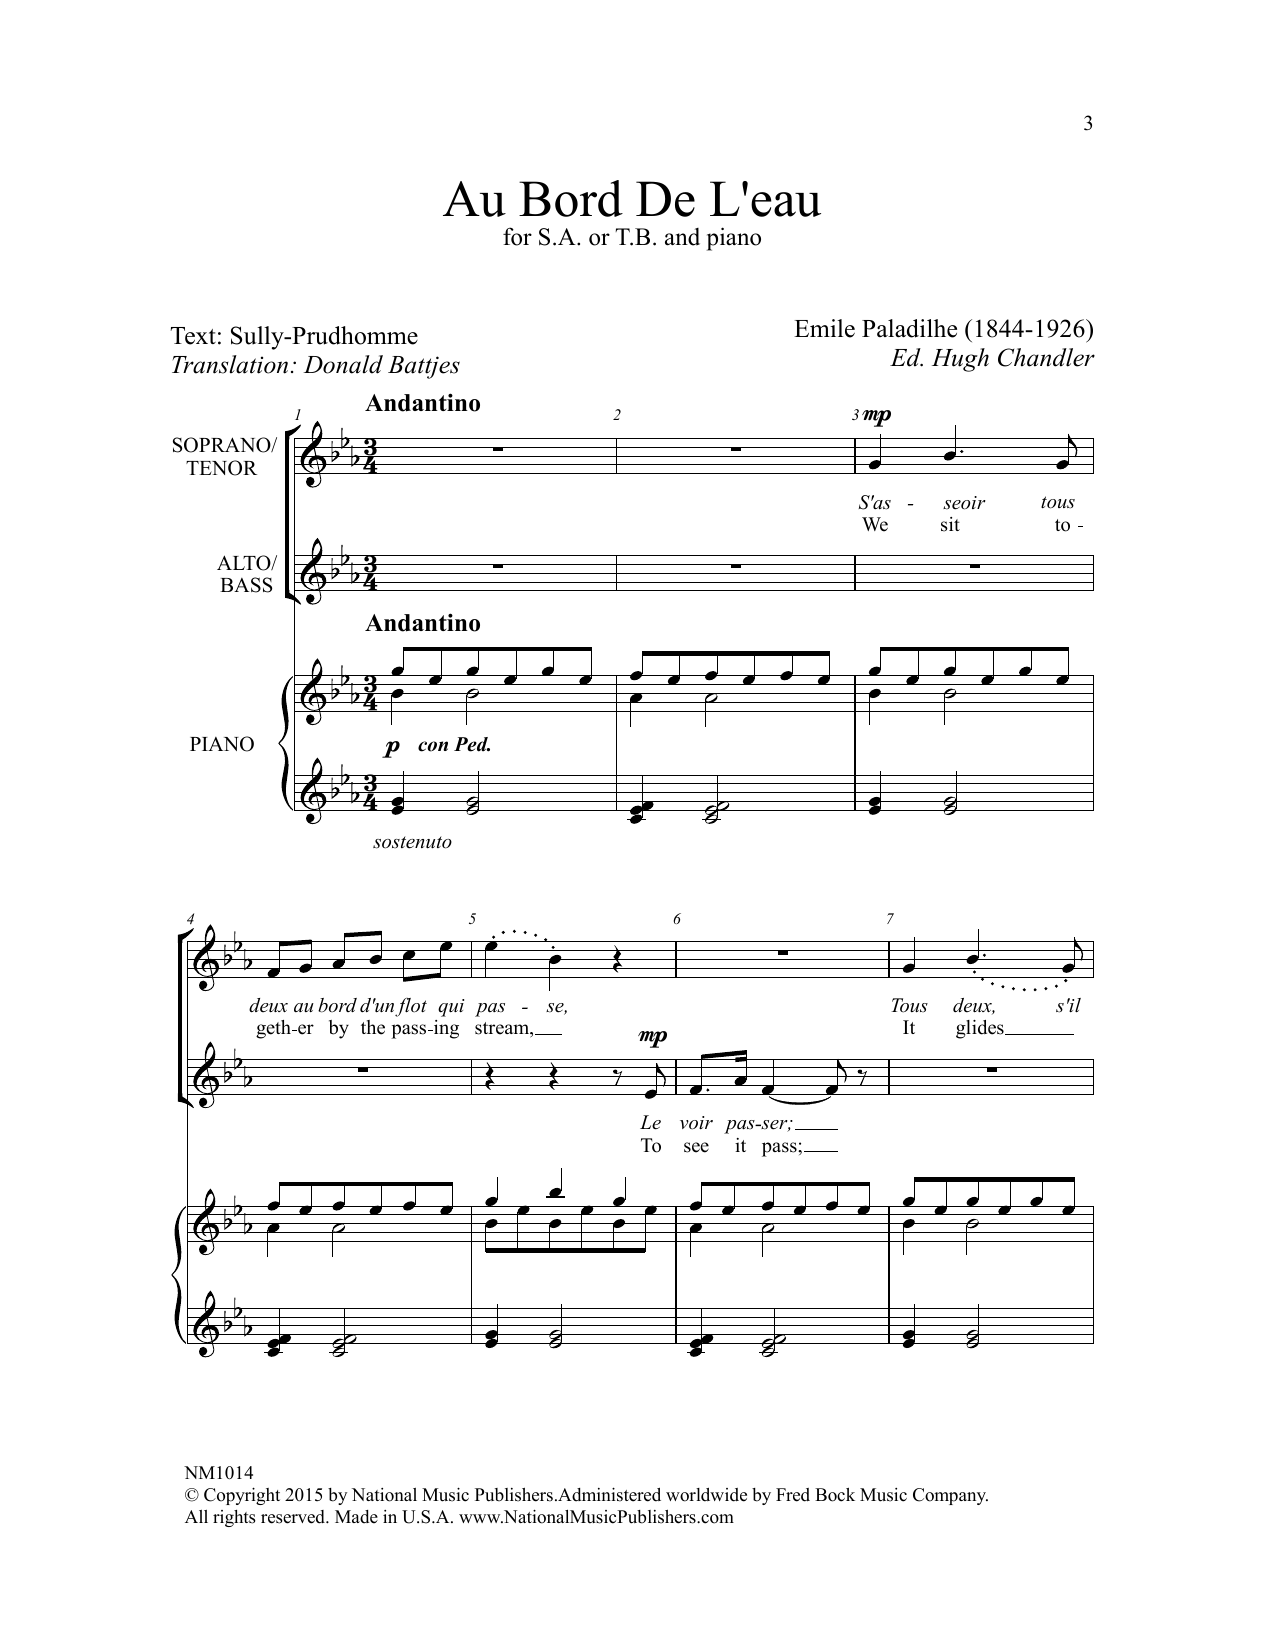 Download Emile Paladilhe Au Bord De L'eau (ed. Hugh Chandler) Sheet Music